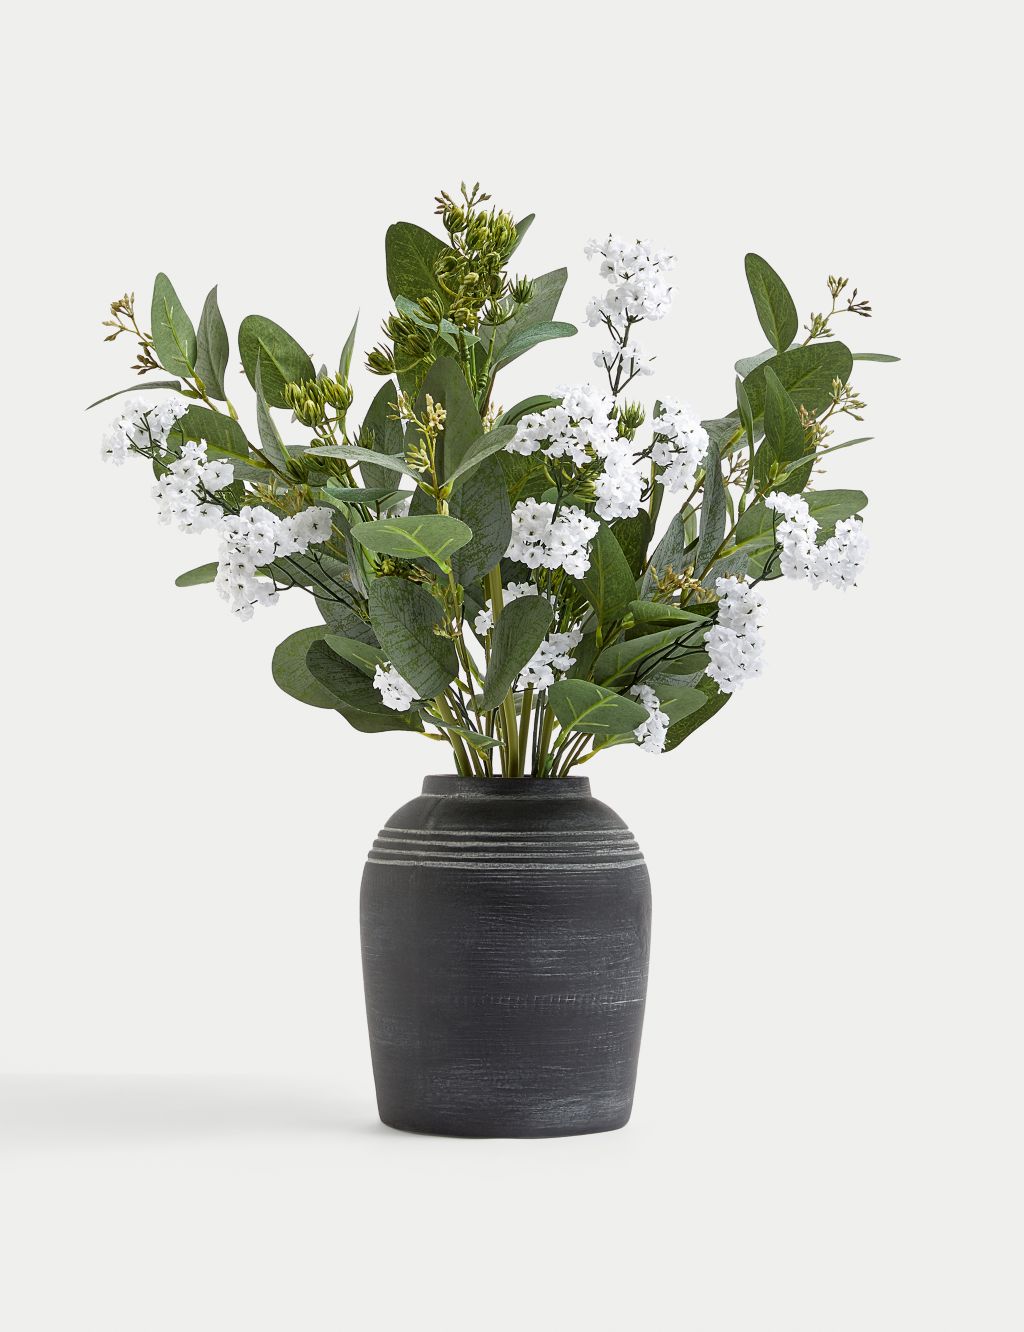 Artificial Flower Arrangement in Vase 3 of 3